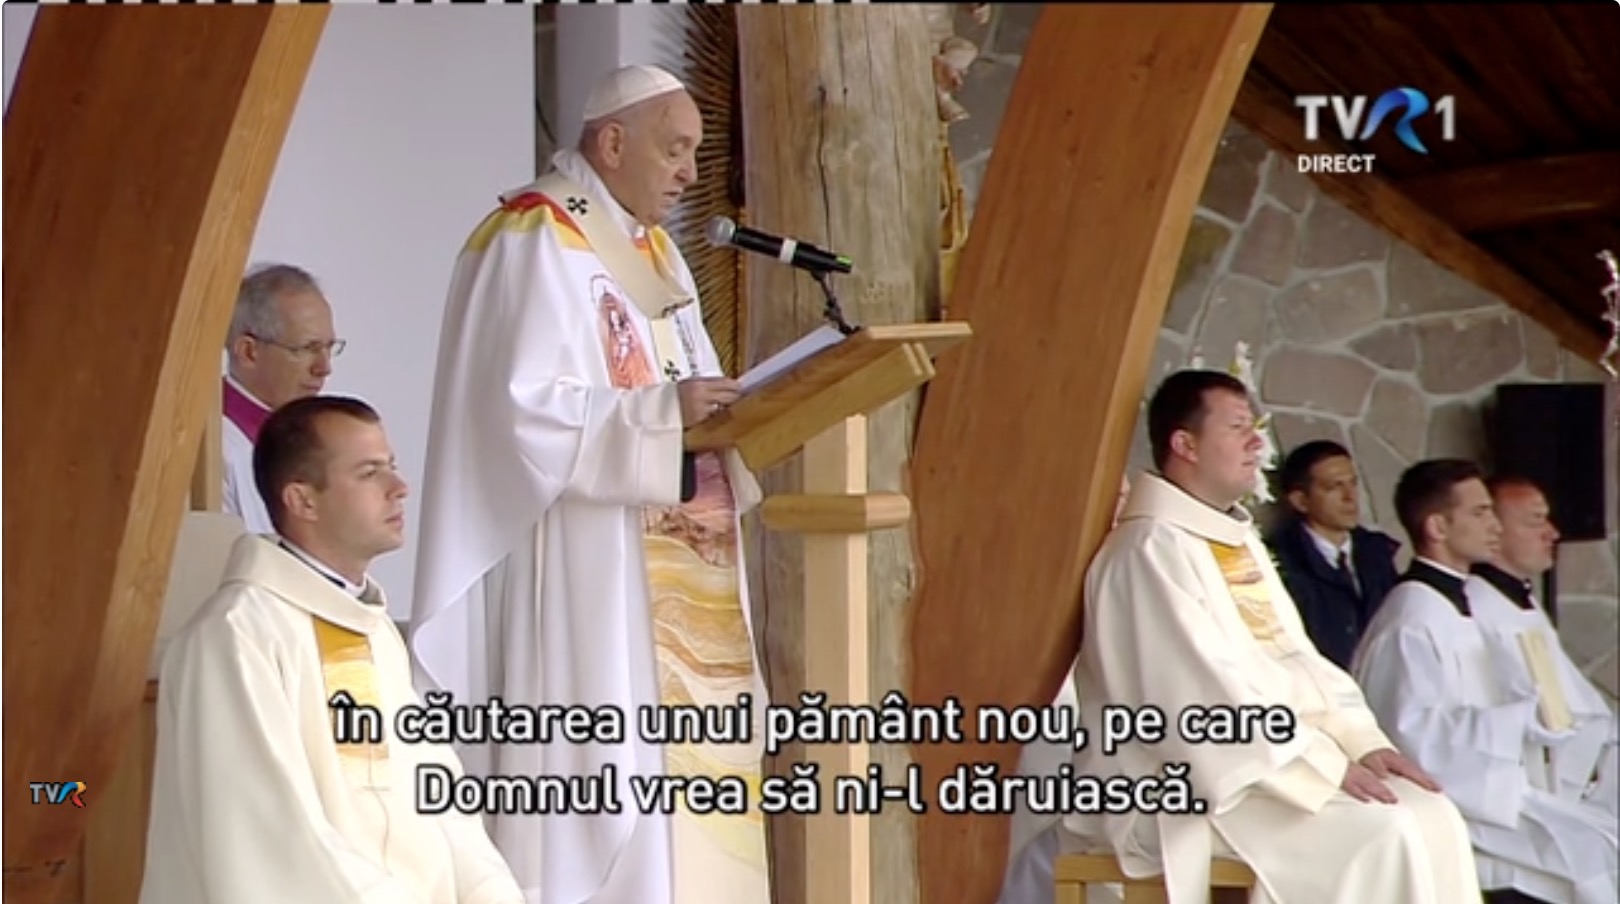 Cine este românca care a creat veșmântul lui Papa Francisc pentru vizita în România